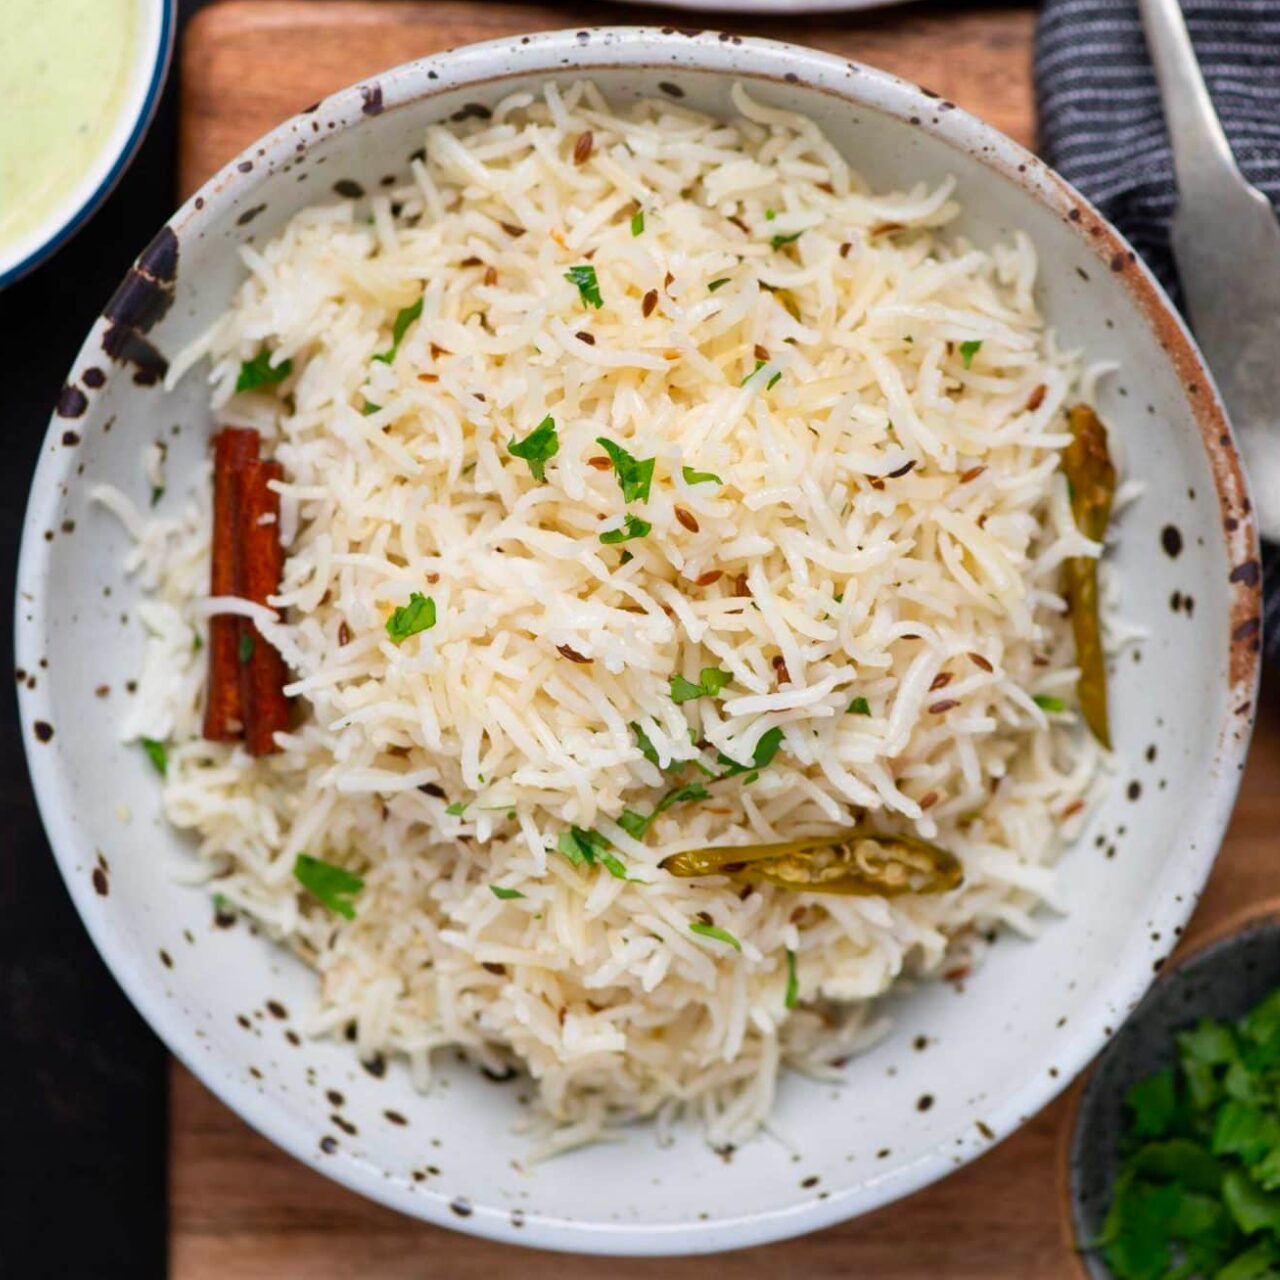 riz indien au cumin servi avec de la coriandre et autres épices dans un bol